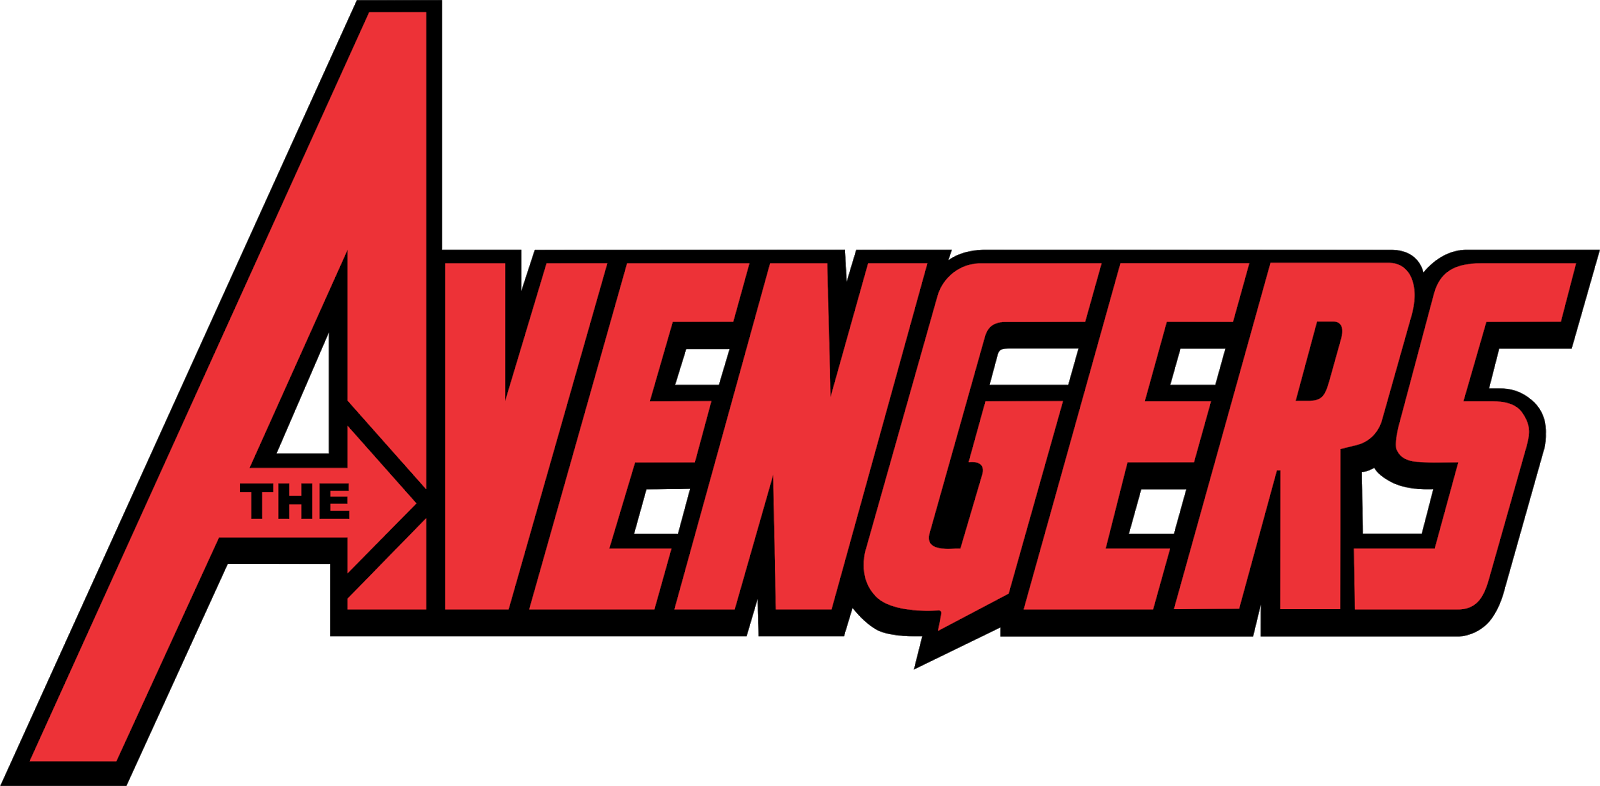 denizignko bies the avengers logo vector #27963